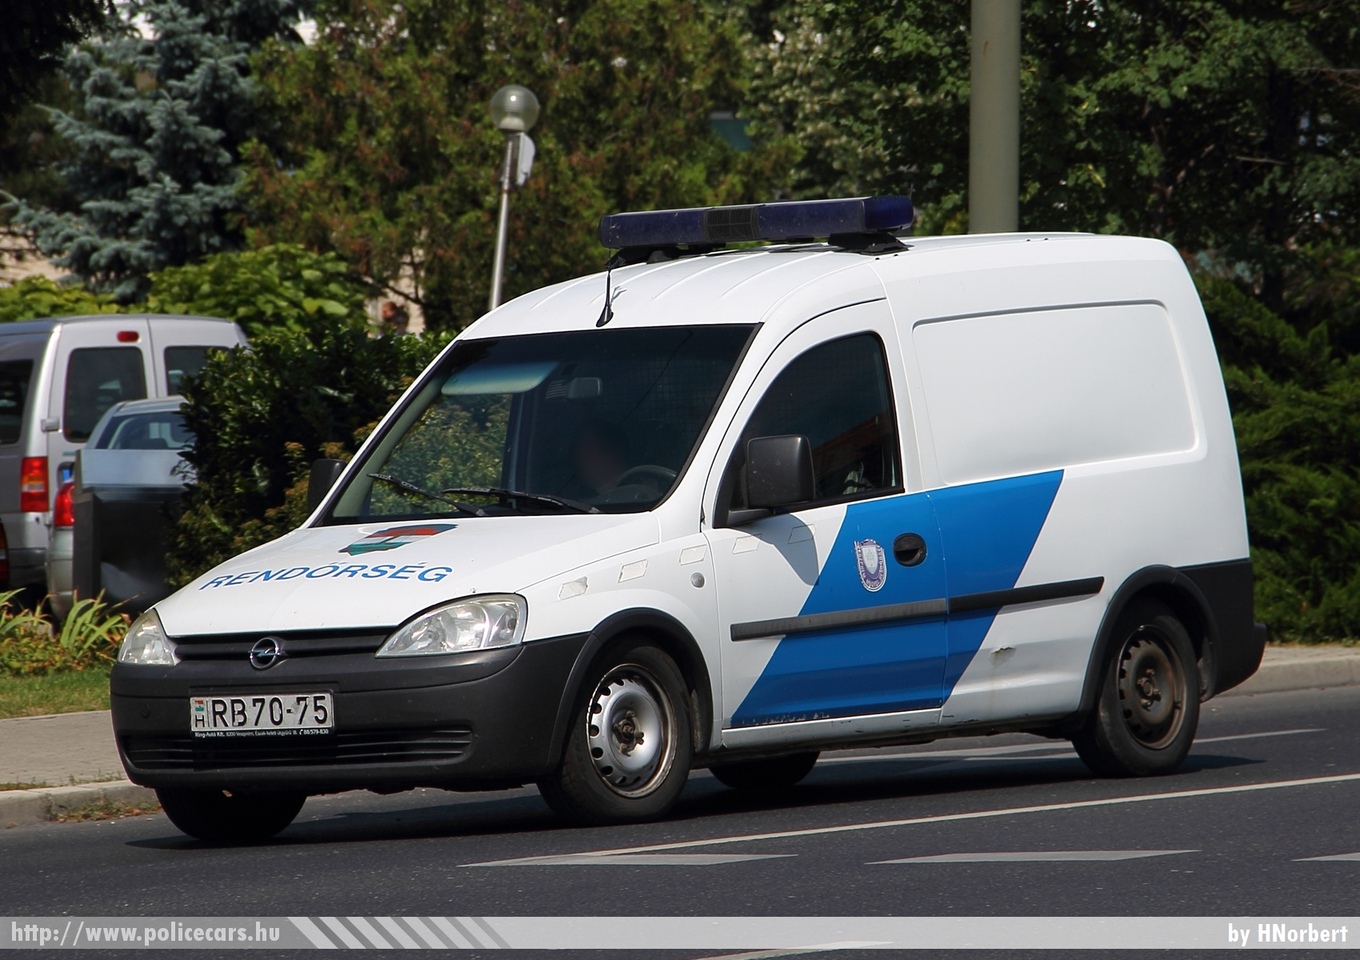 Opel Combo, fotó: HNorbert
Keywords: magyar Magyarország rendőr rendőrautó rendőrség Hungary hungarian police policecar RB70-75